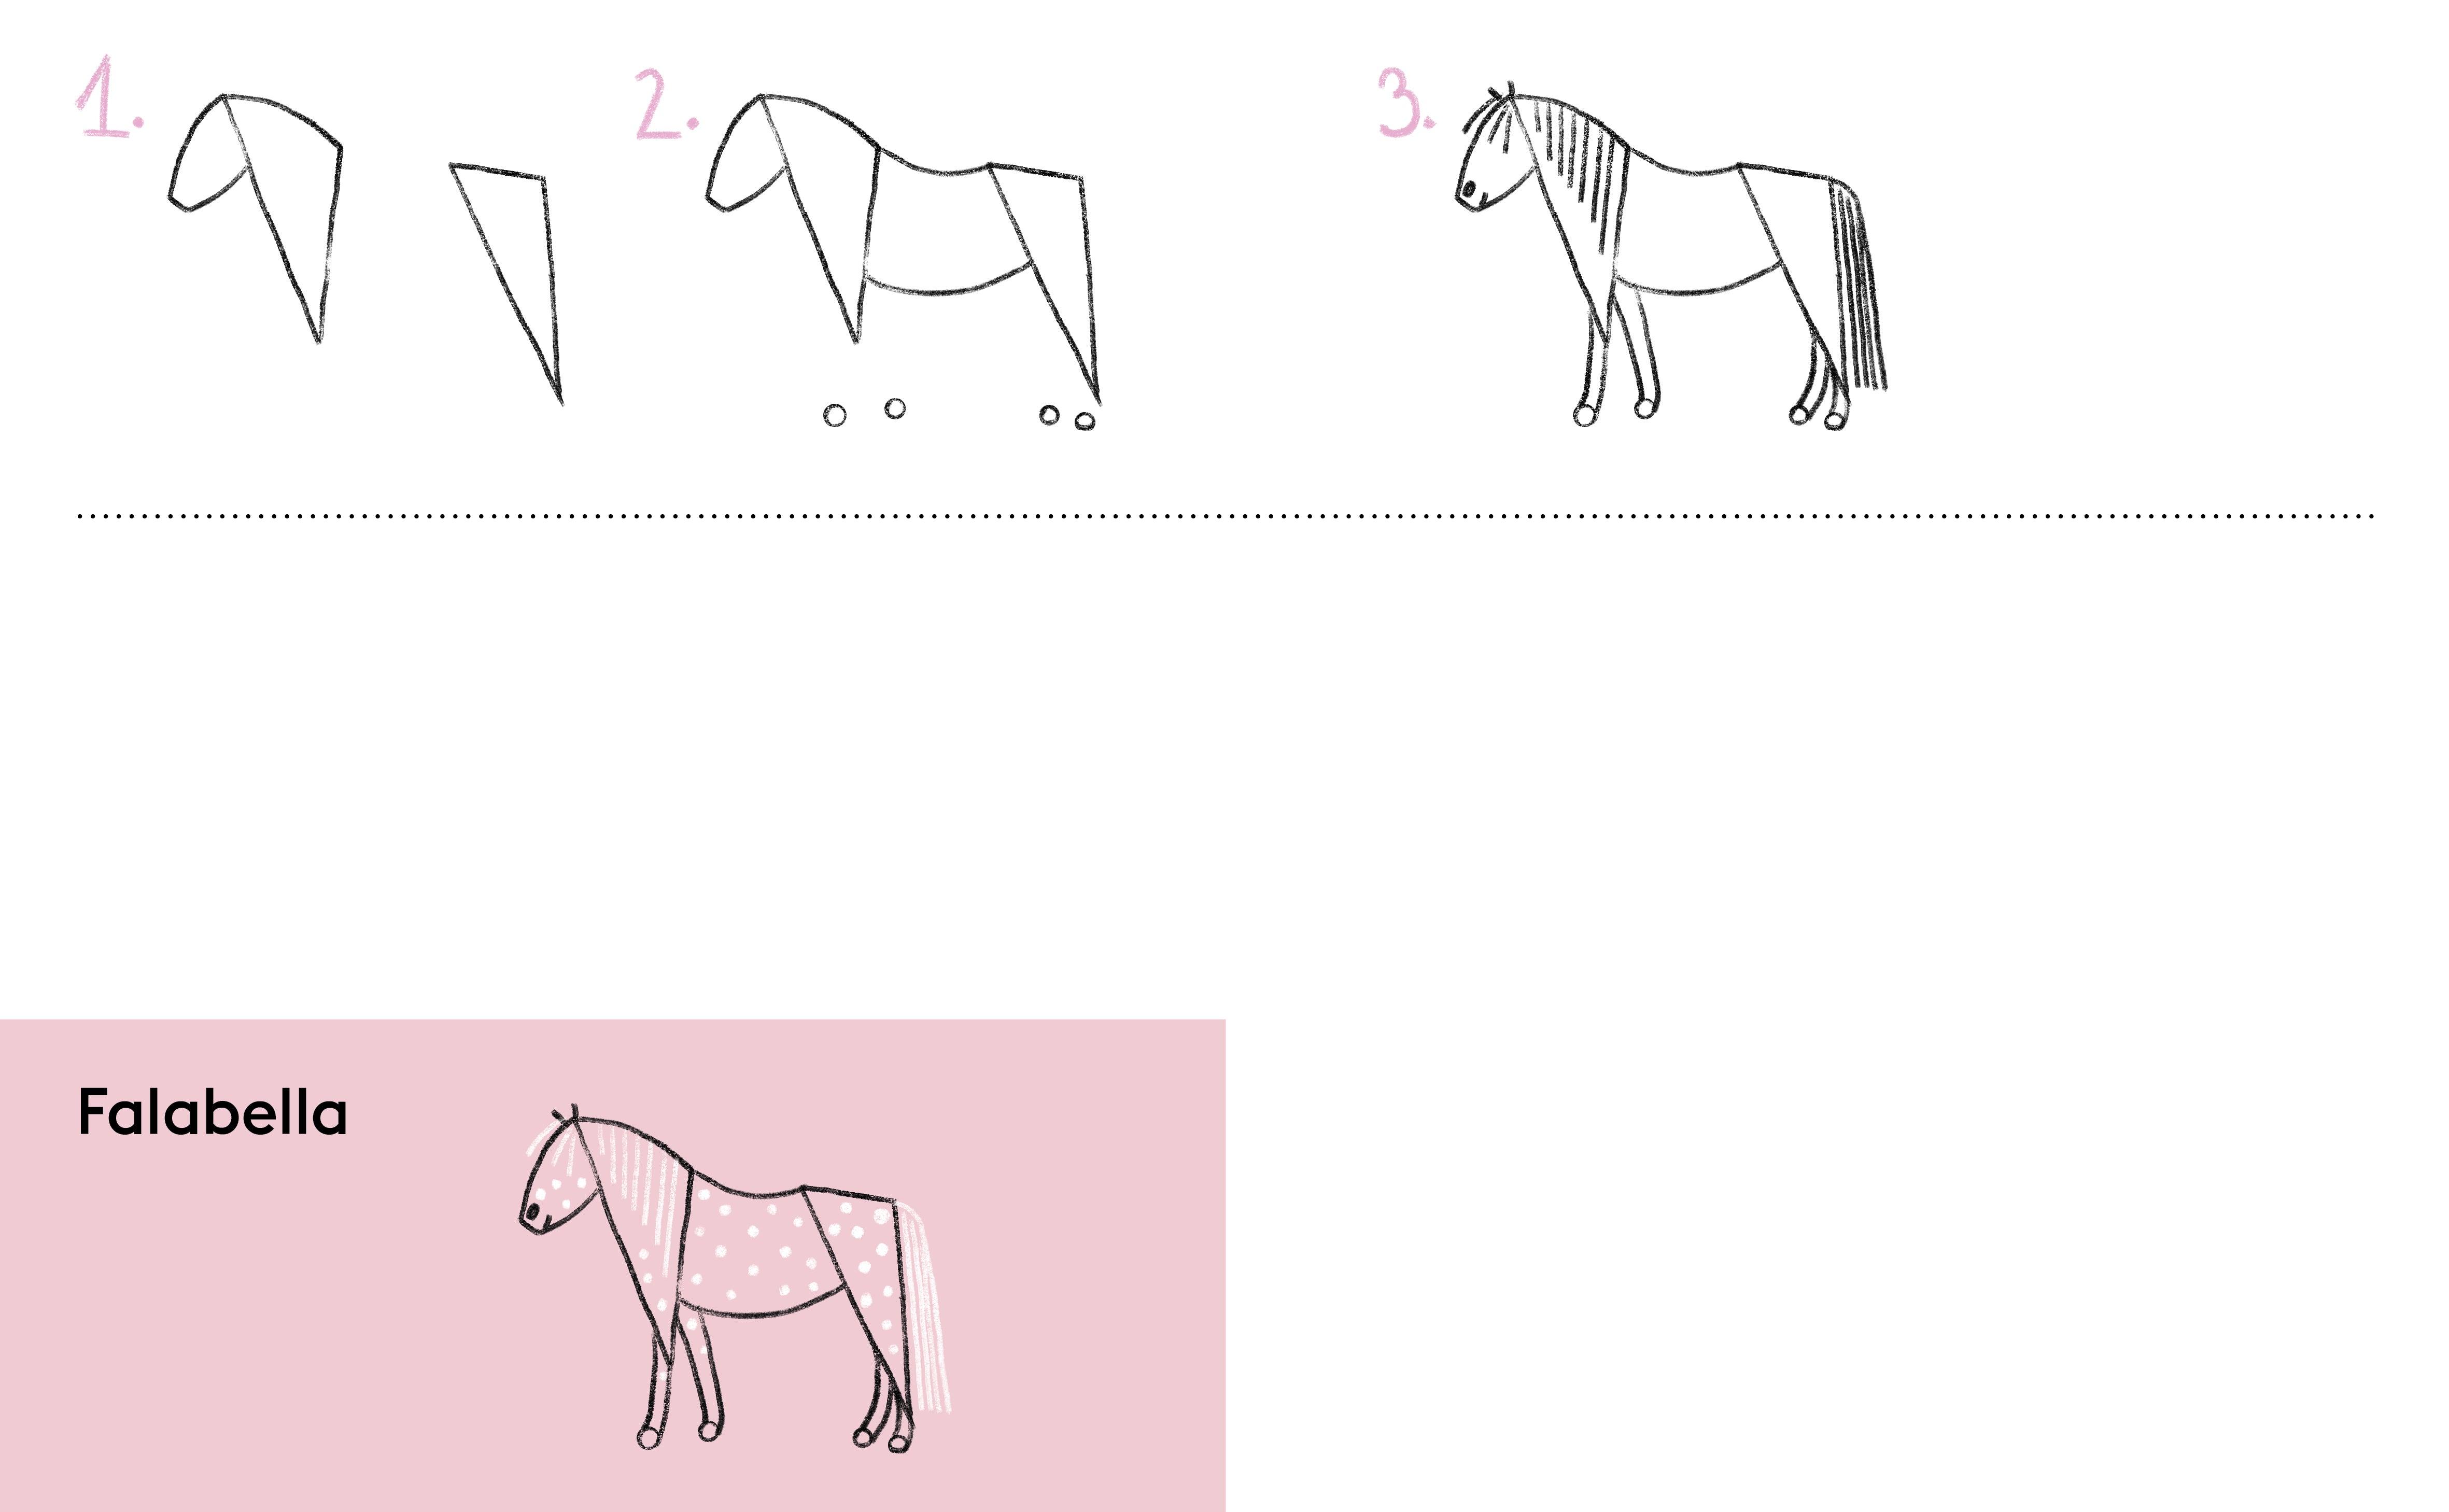 Wydawnictwo Kropka: Umiem rysować konie, kucyki i jednorożce - Noski Noski